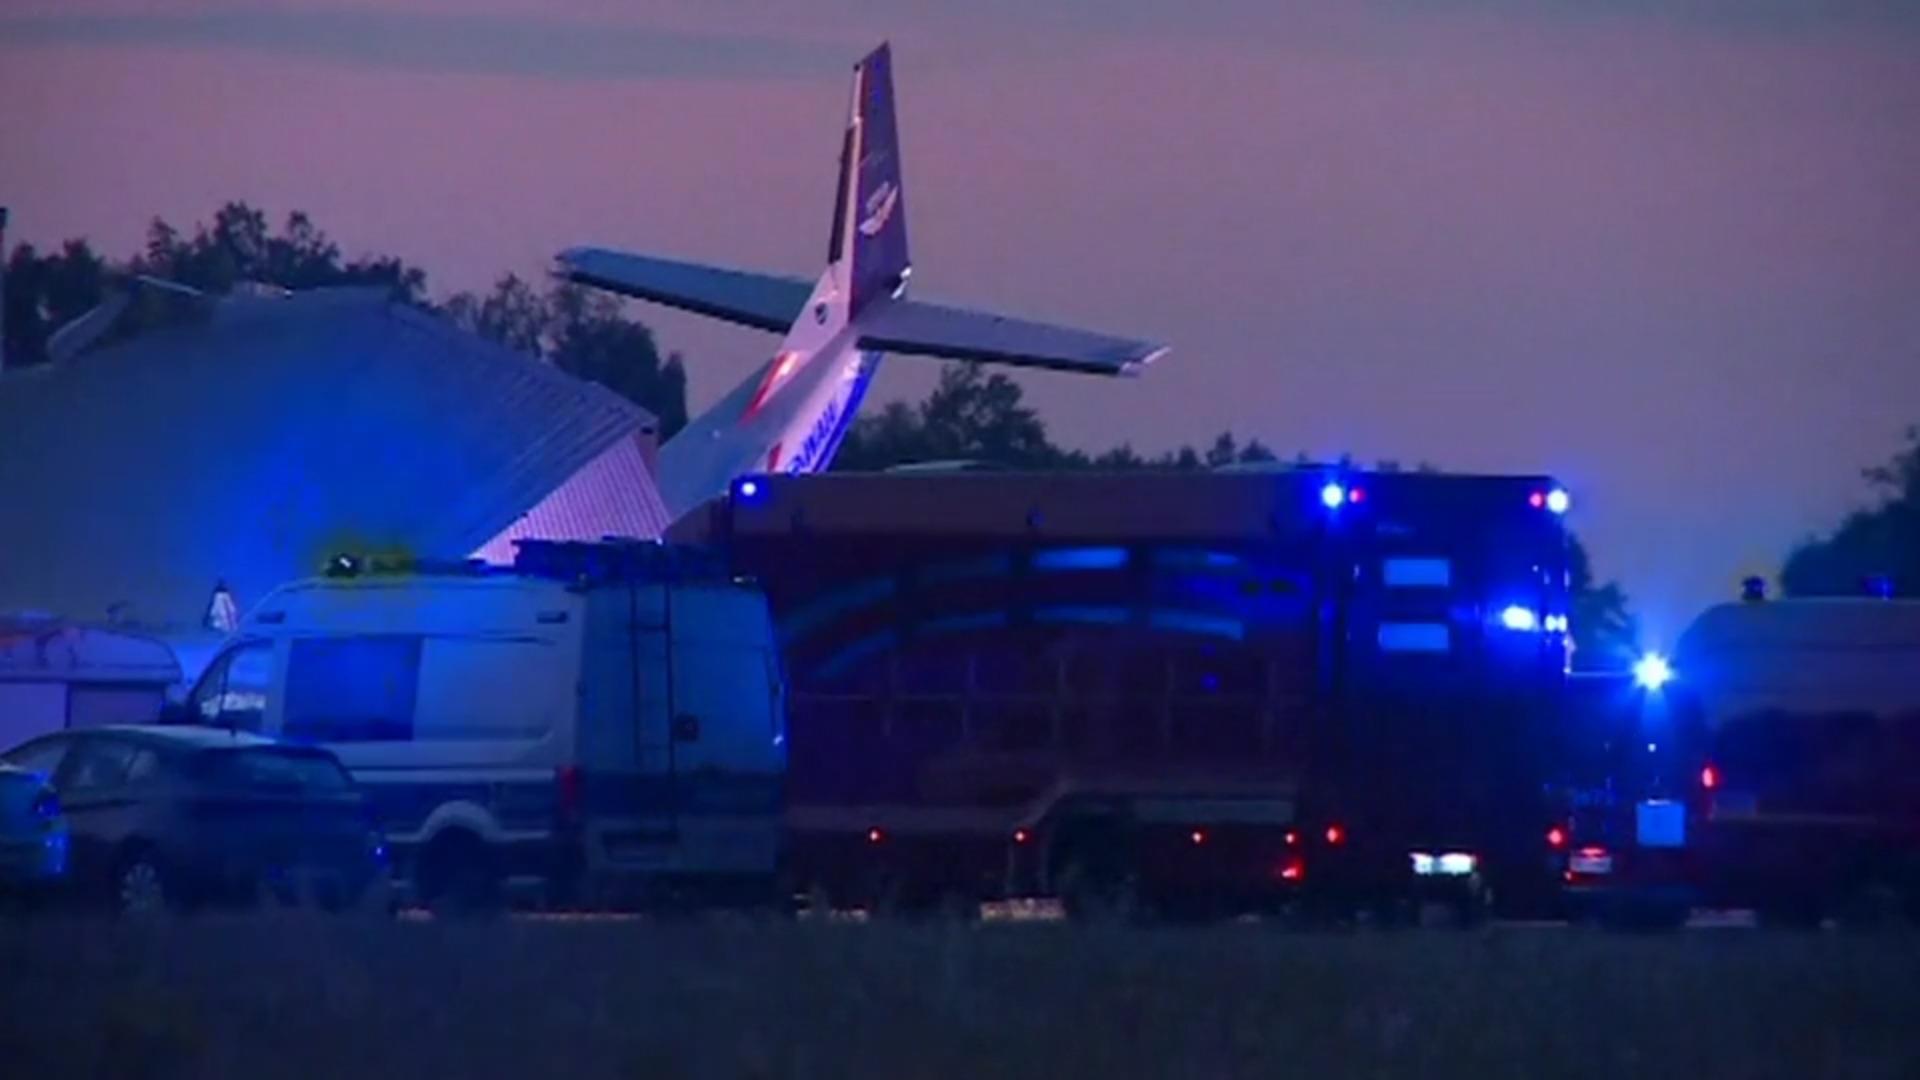 Cessna kracht in Hangar - fünf Tote Tragödie beim Landeanflug